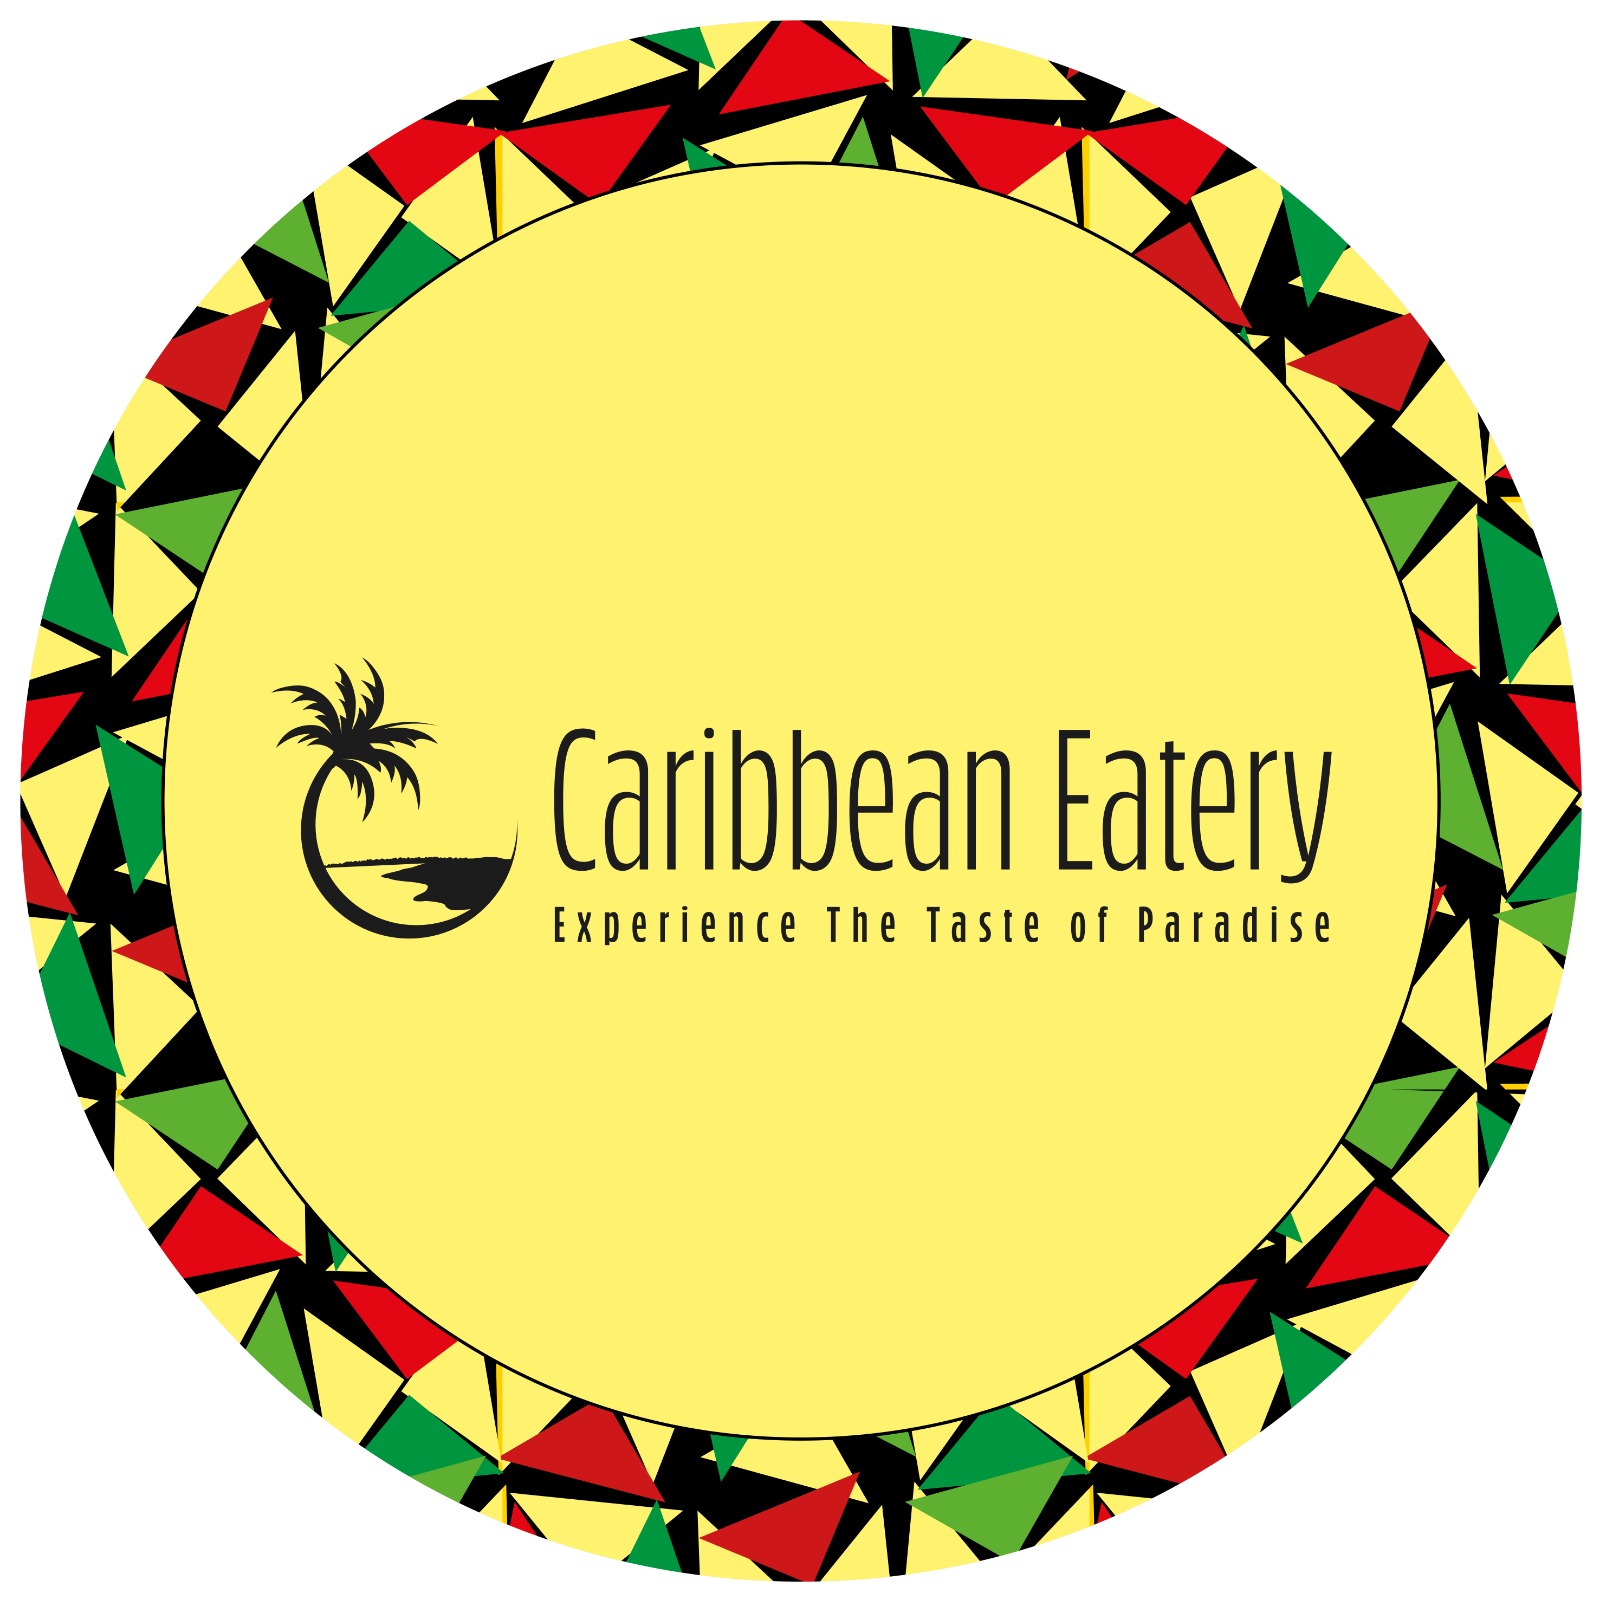 Caribbean Eatery